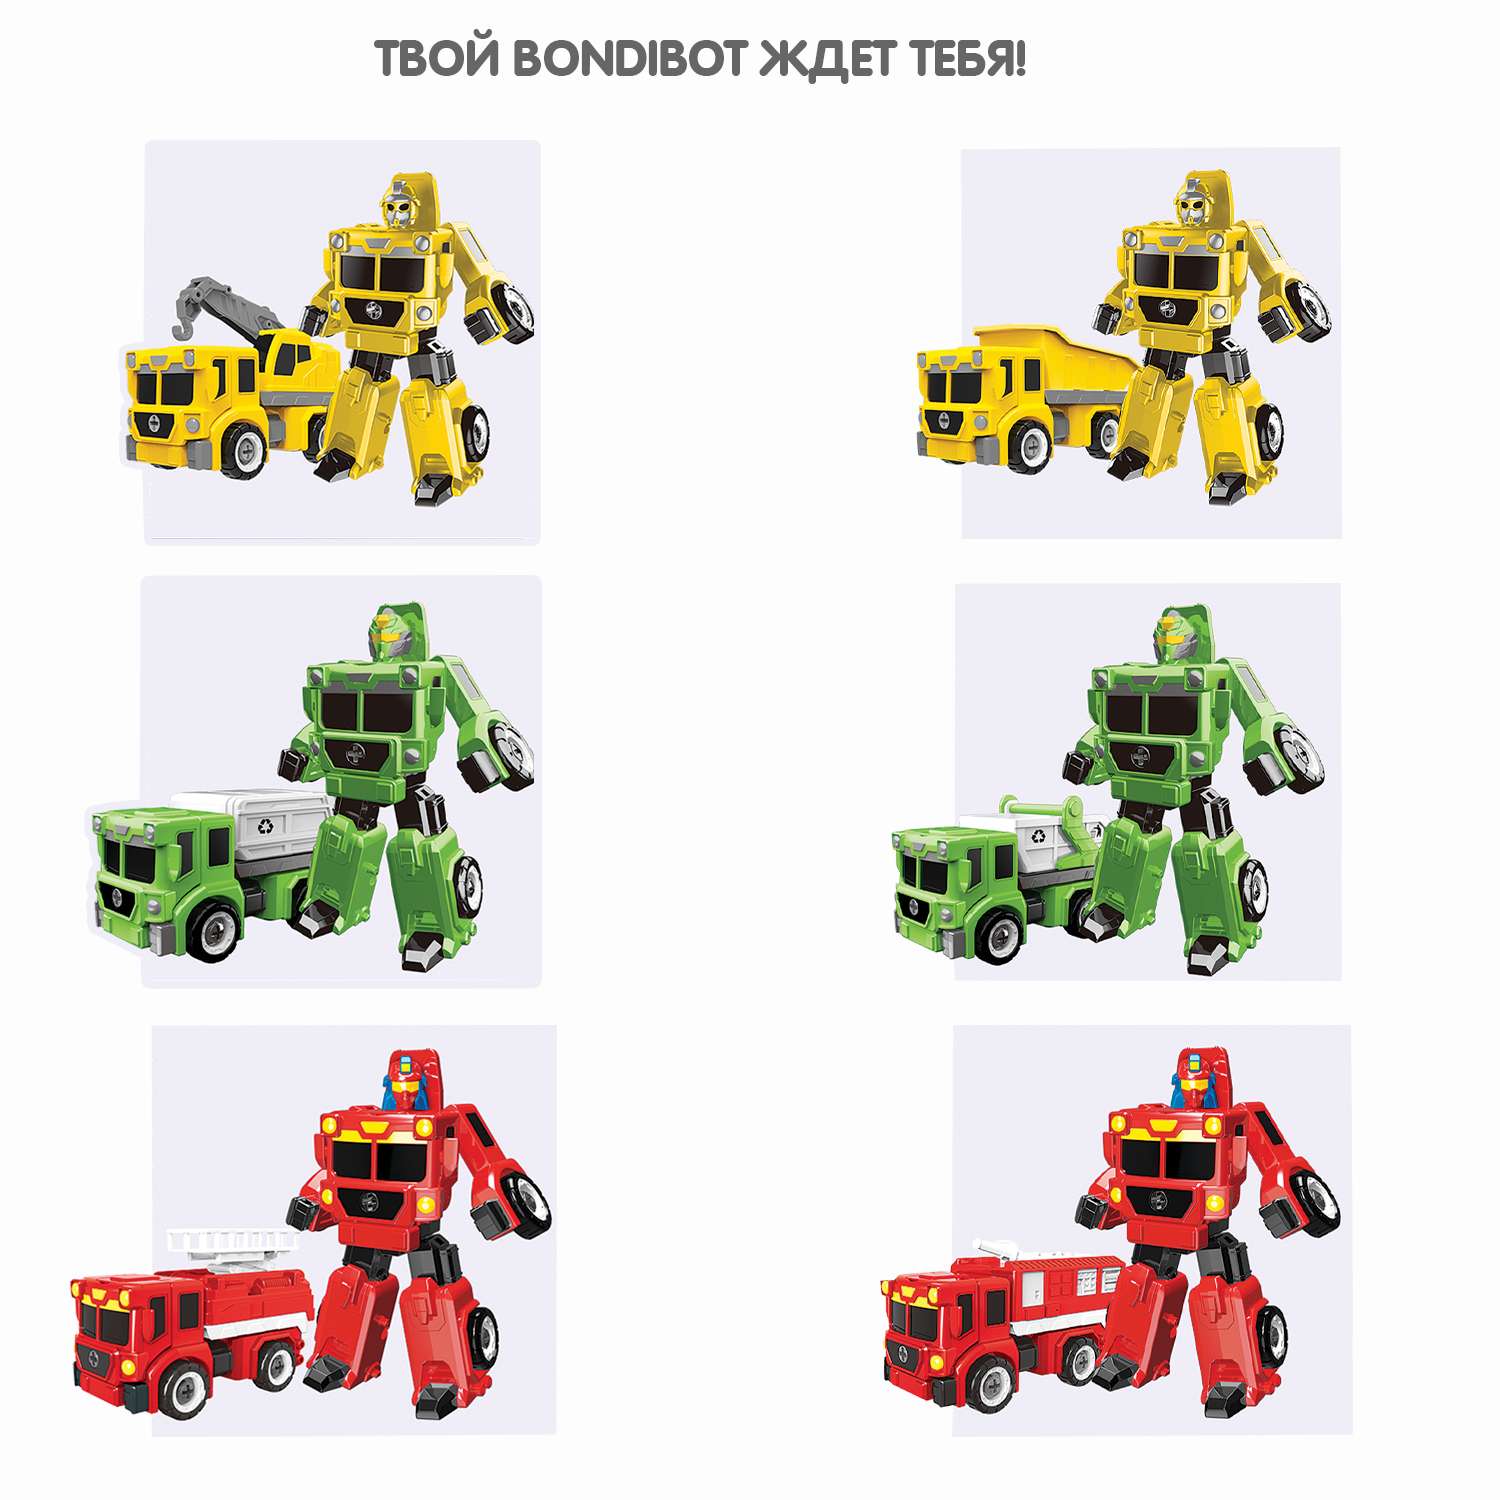 Трансформер-конструктор BONDIBON Bondibot Робот-самосвал строительный 2 в 1 с отвёрткой - фото 9